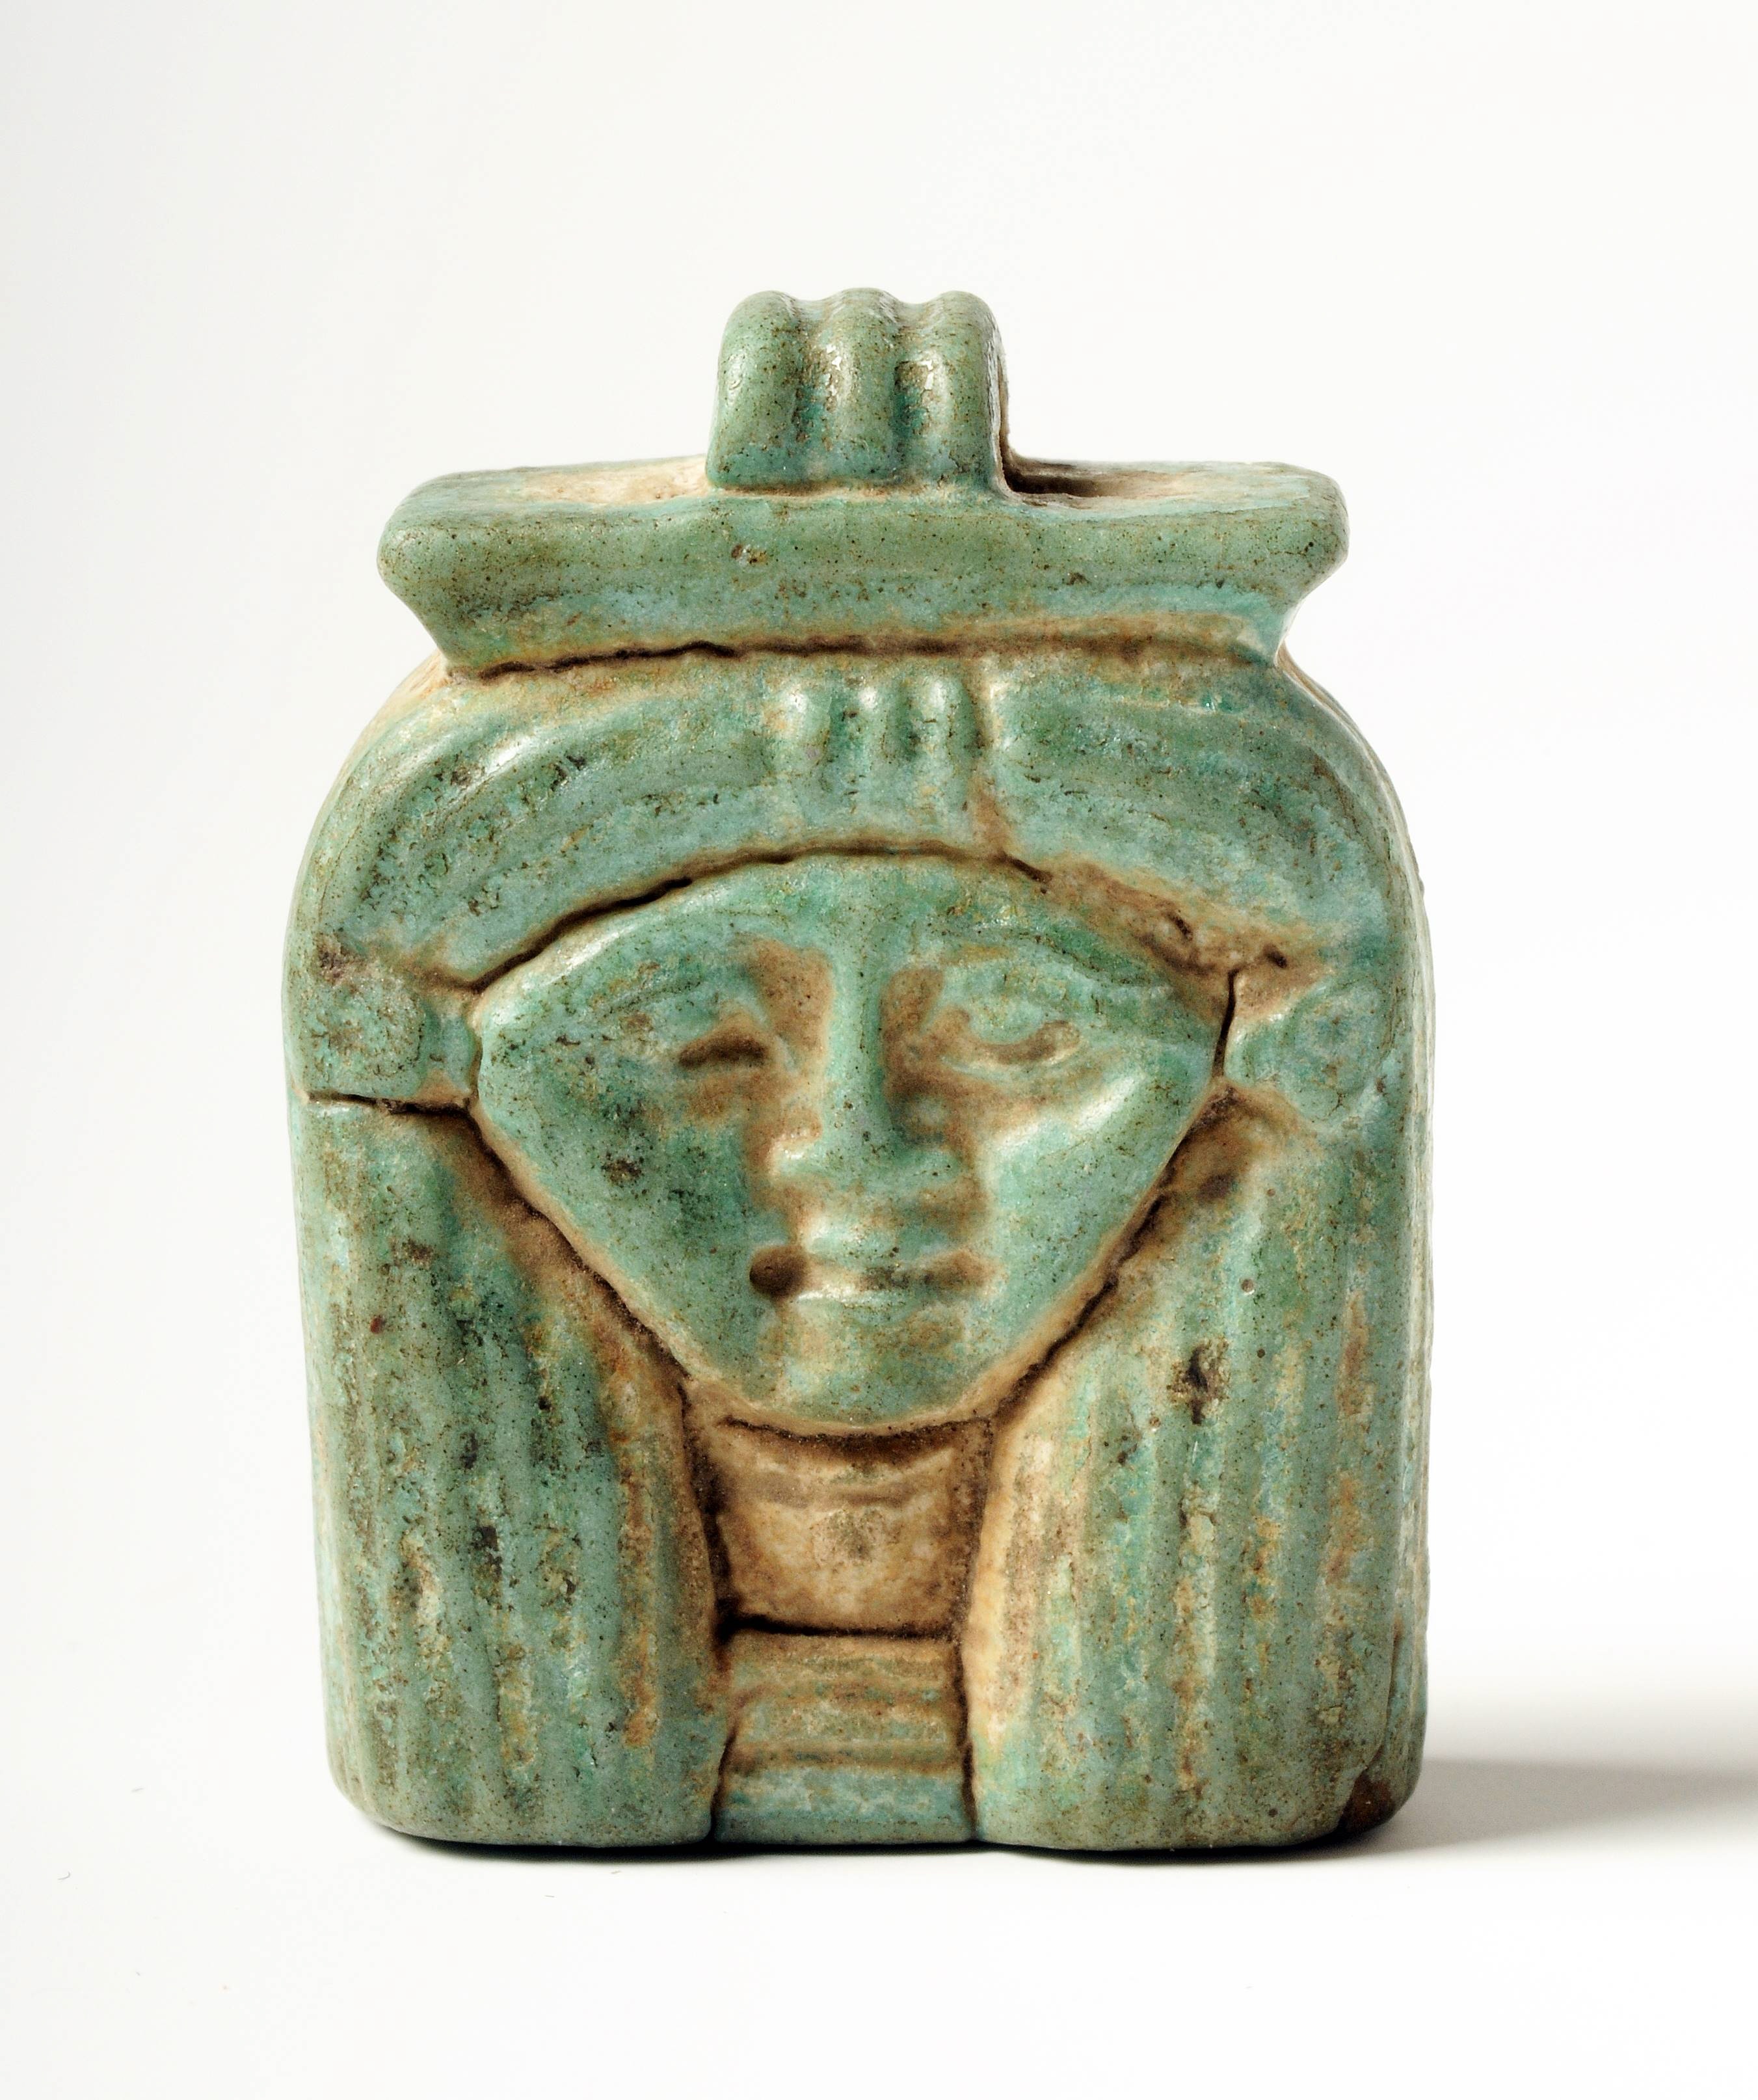 神々の護符、生活と密着 古代エジプト展・死と再生の物語㊦ - 産経ニュース